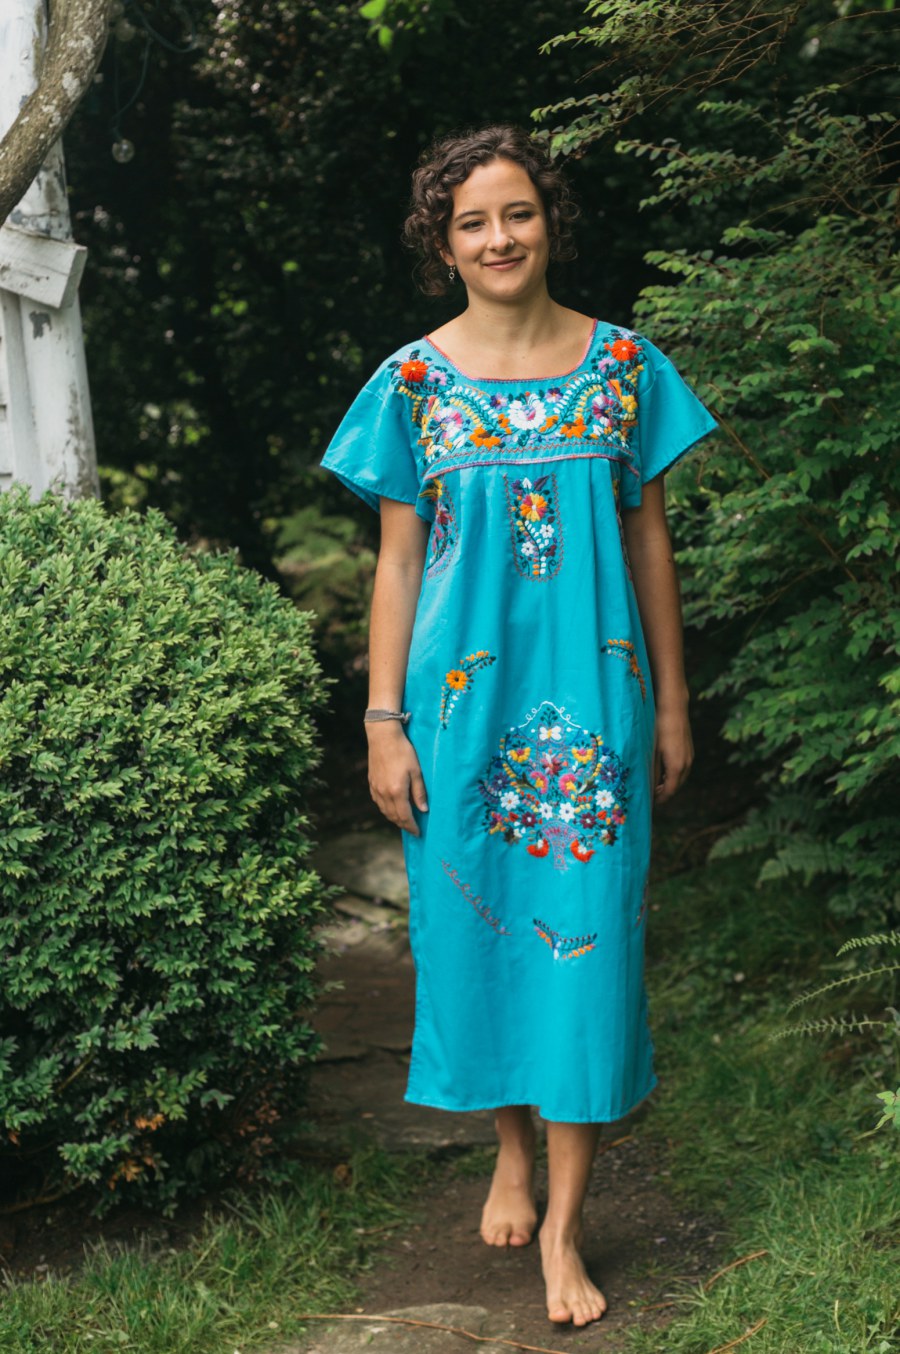 Old Mexico Dress by Folkwear Patterns